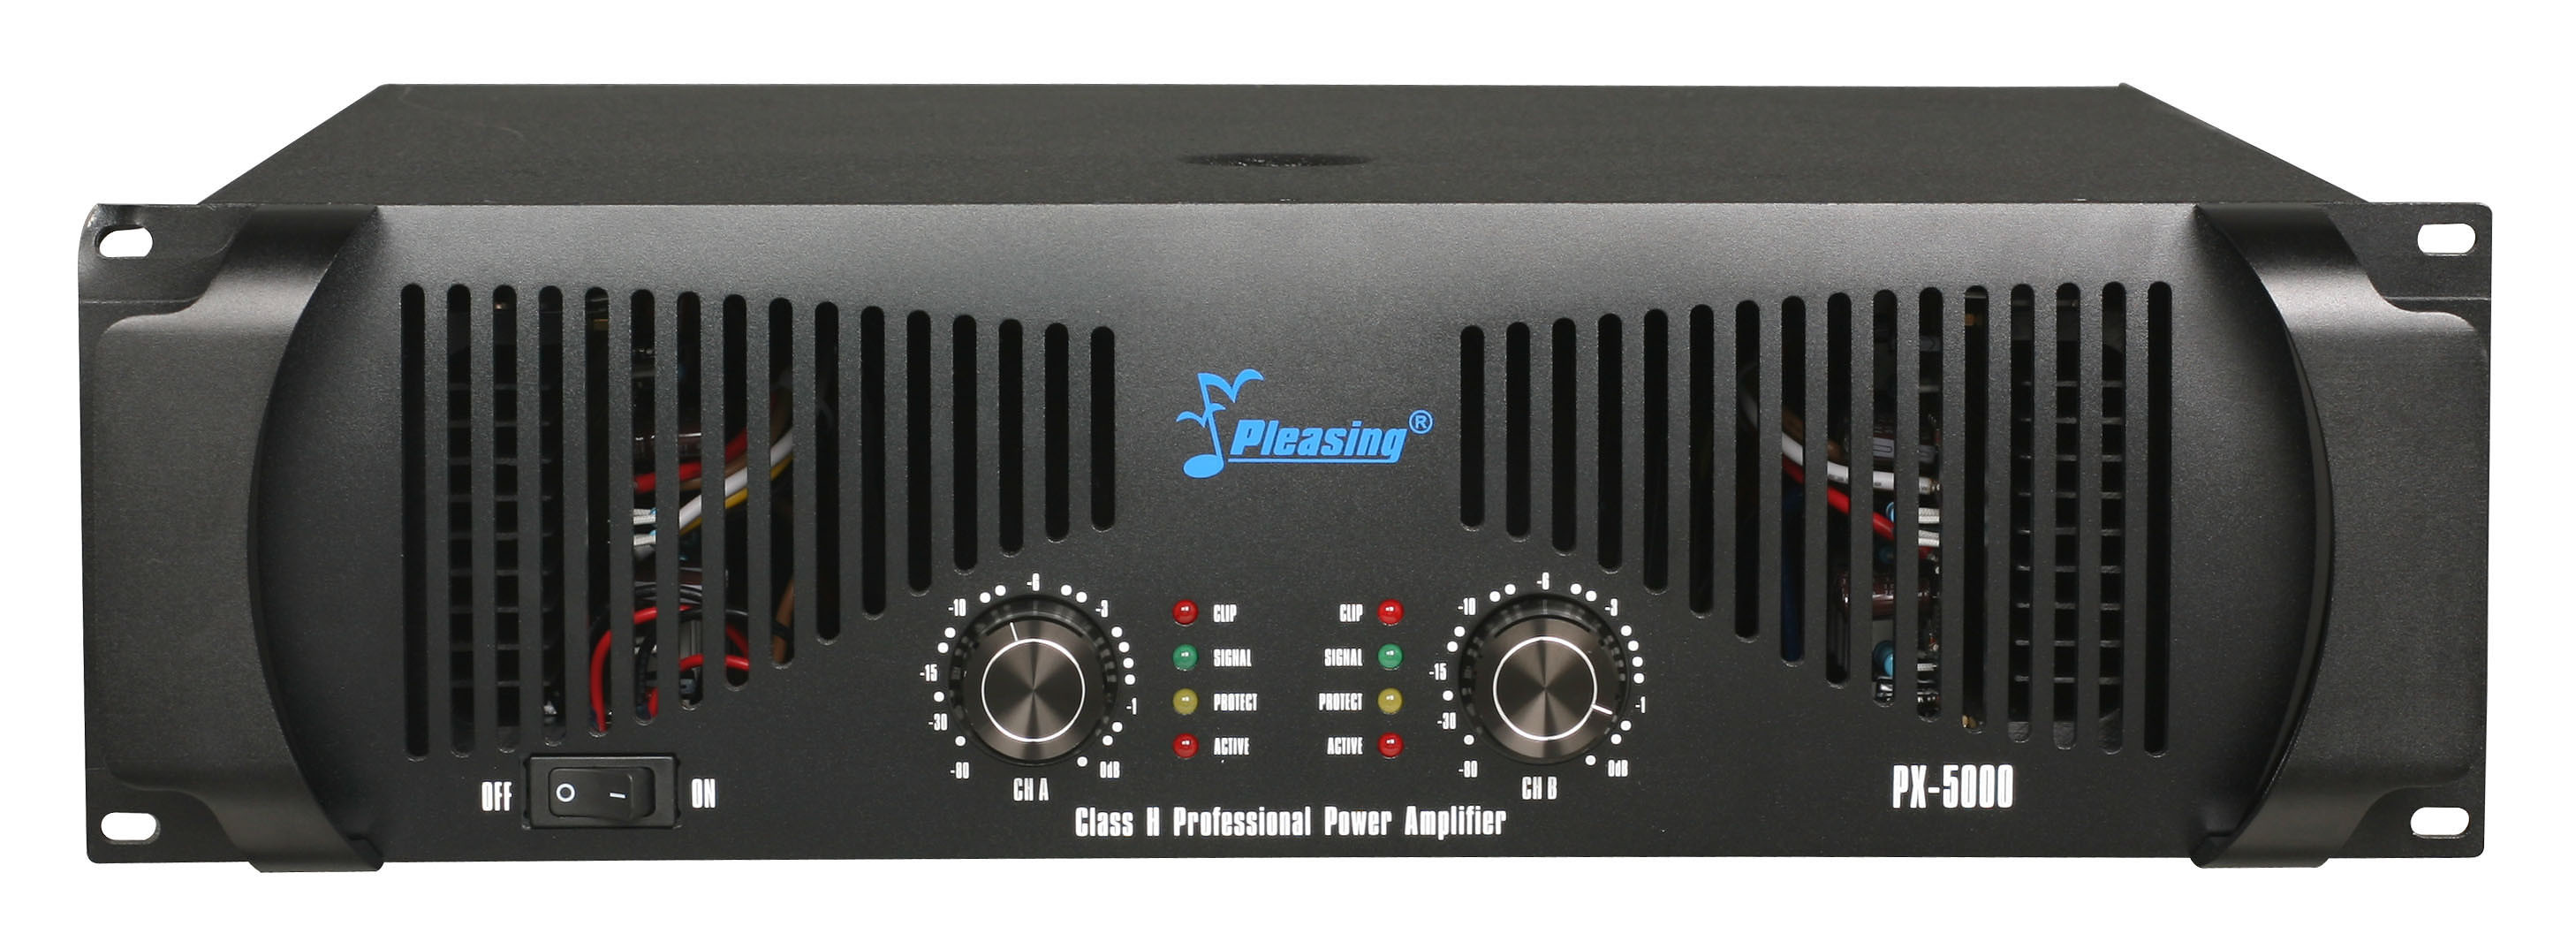 Power Amplifier Px-5000 High Power Amplifier PA Speaker